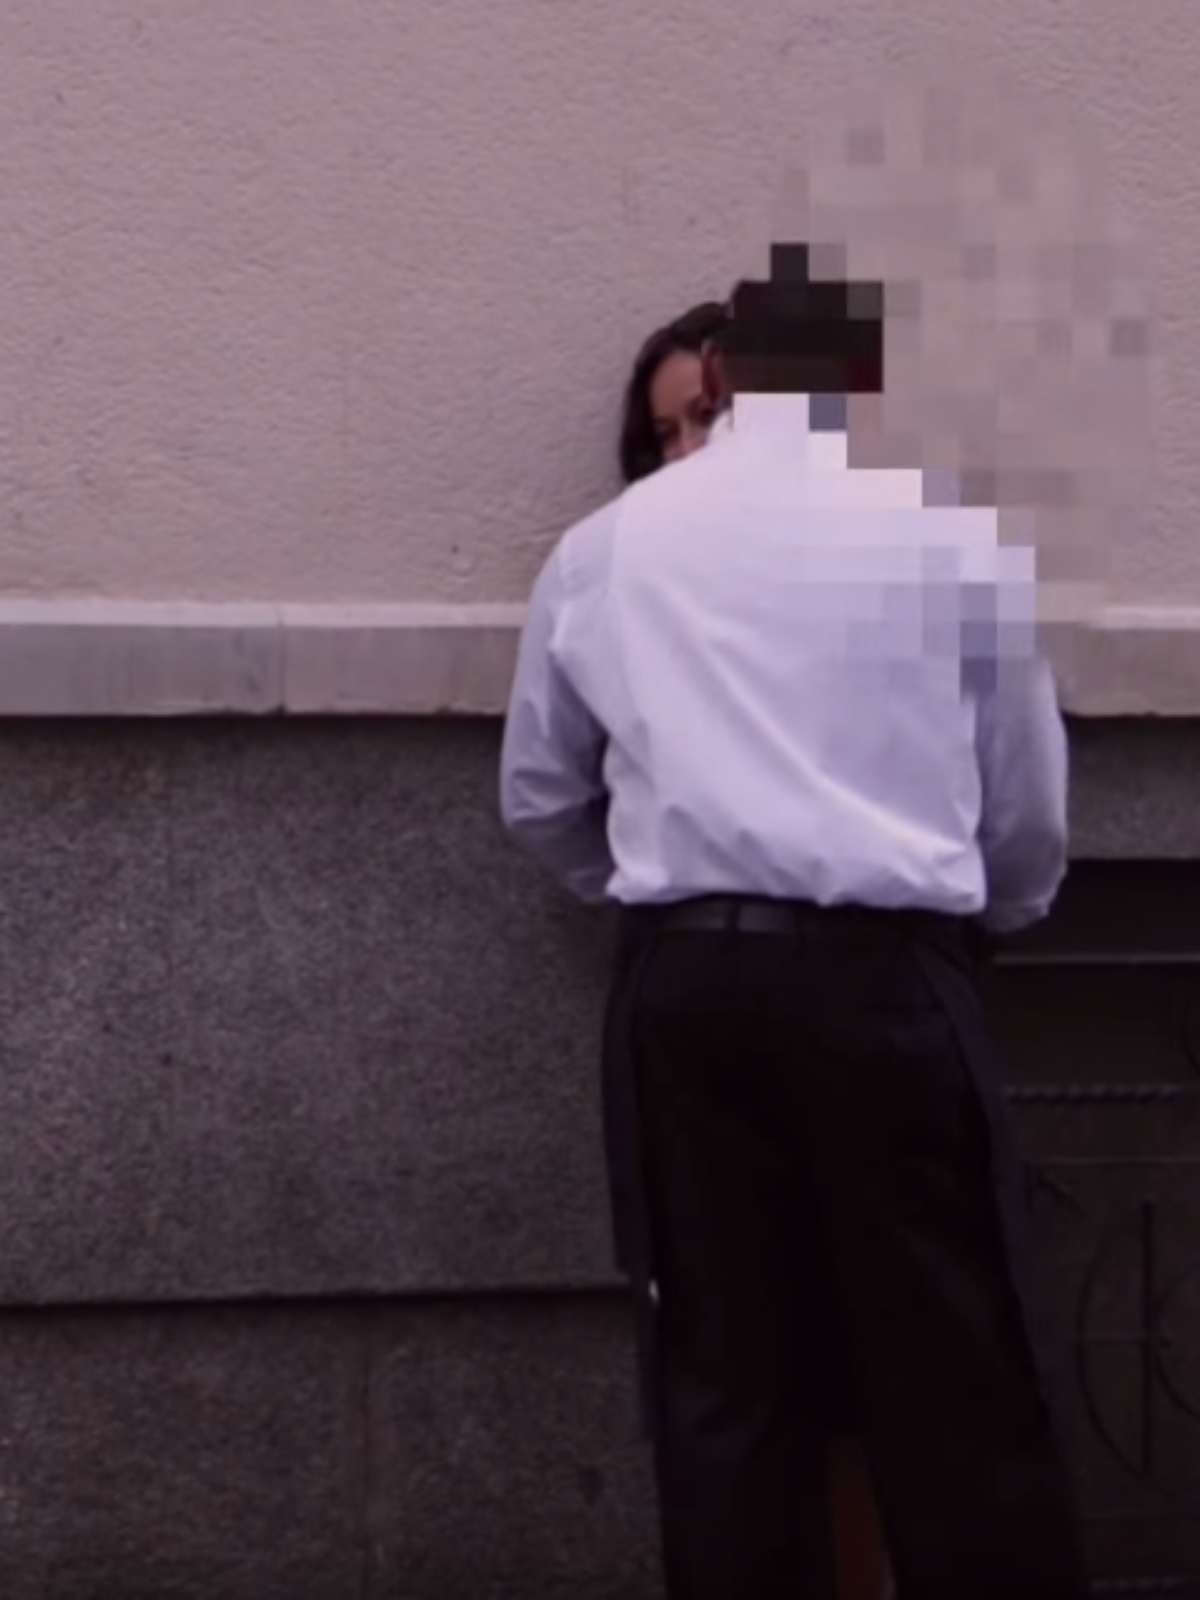 Vídeo flagra reação de homens ao encontrarem mulher bêbada foto foto